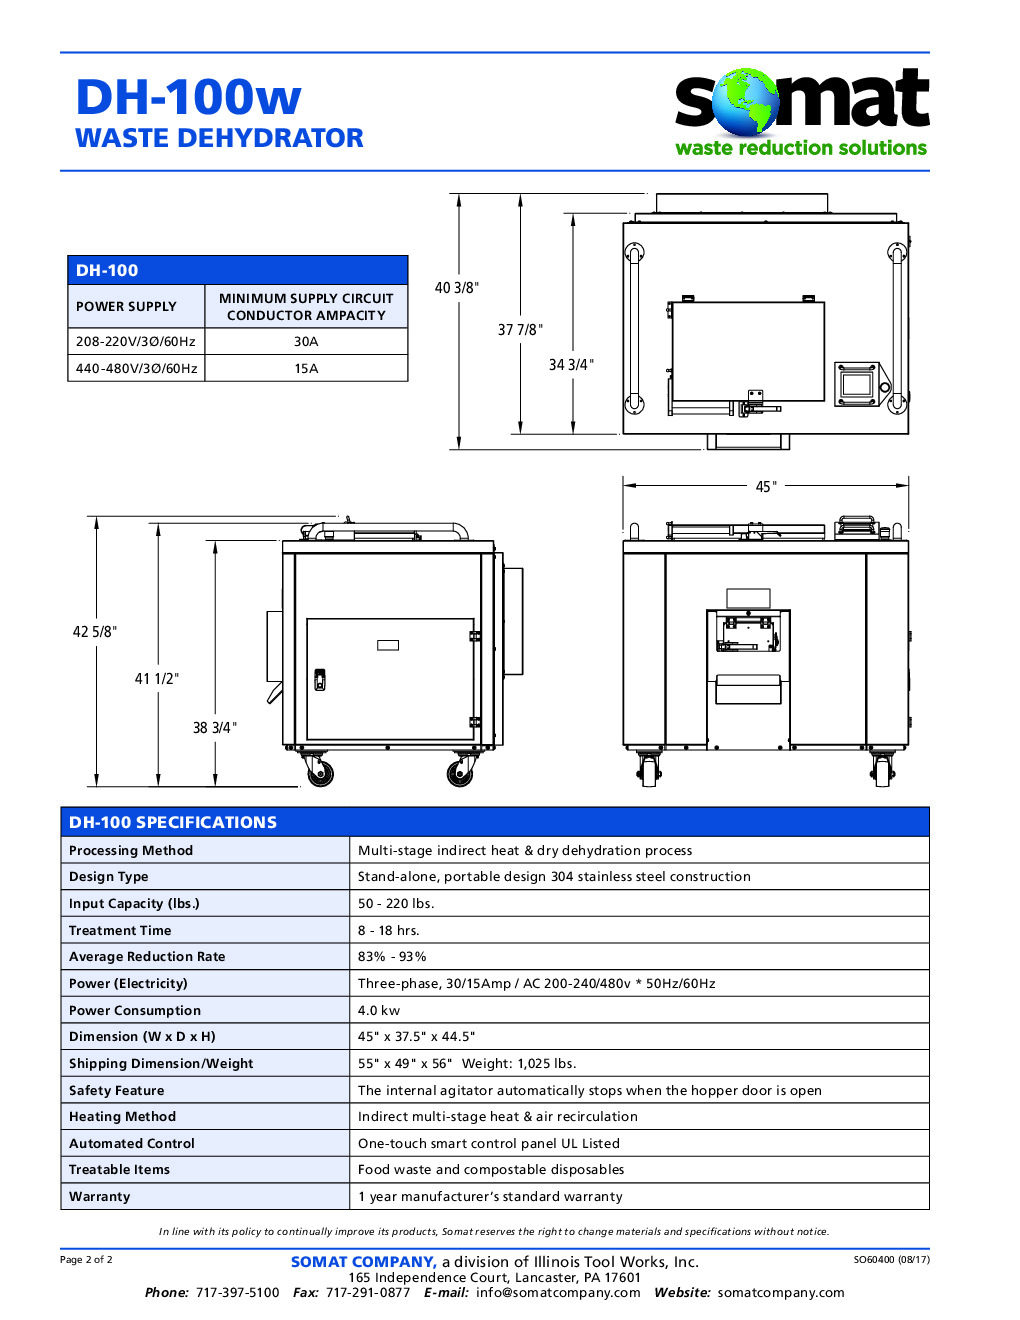 Somat DH100+BUILDUP Waste System